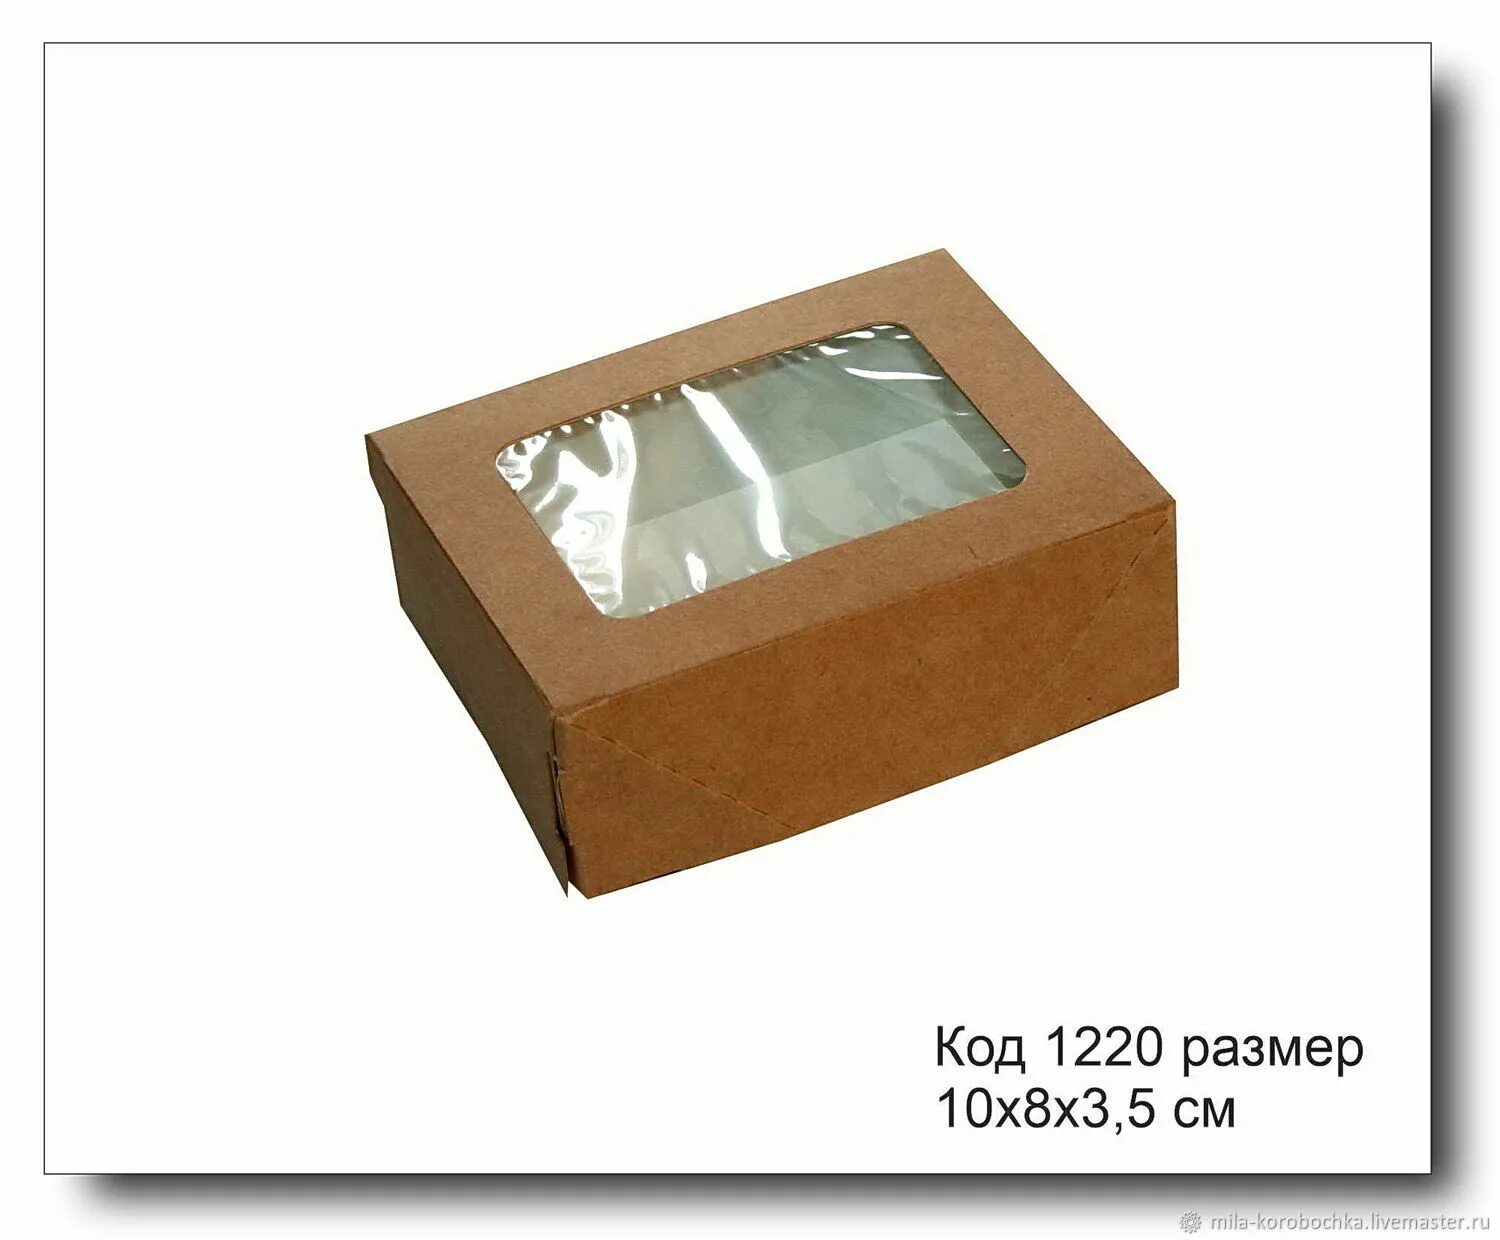 Крафт коробка с окном 10х8х3.5 см. Коробка крафт с окошком 10х8х3,5 см. Коробочка картон крафт с окошком 10*8*3 см. Крафт коробка 10х8. Коробка 10 8 3